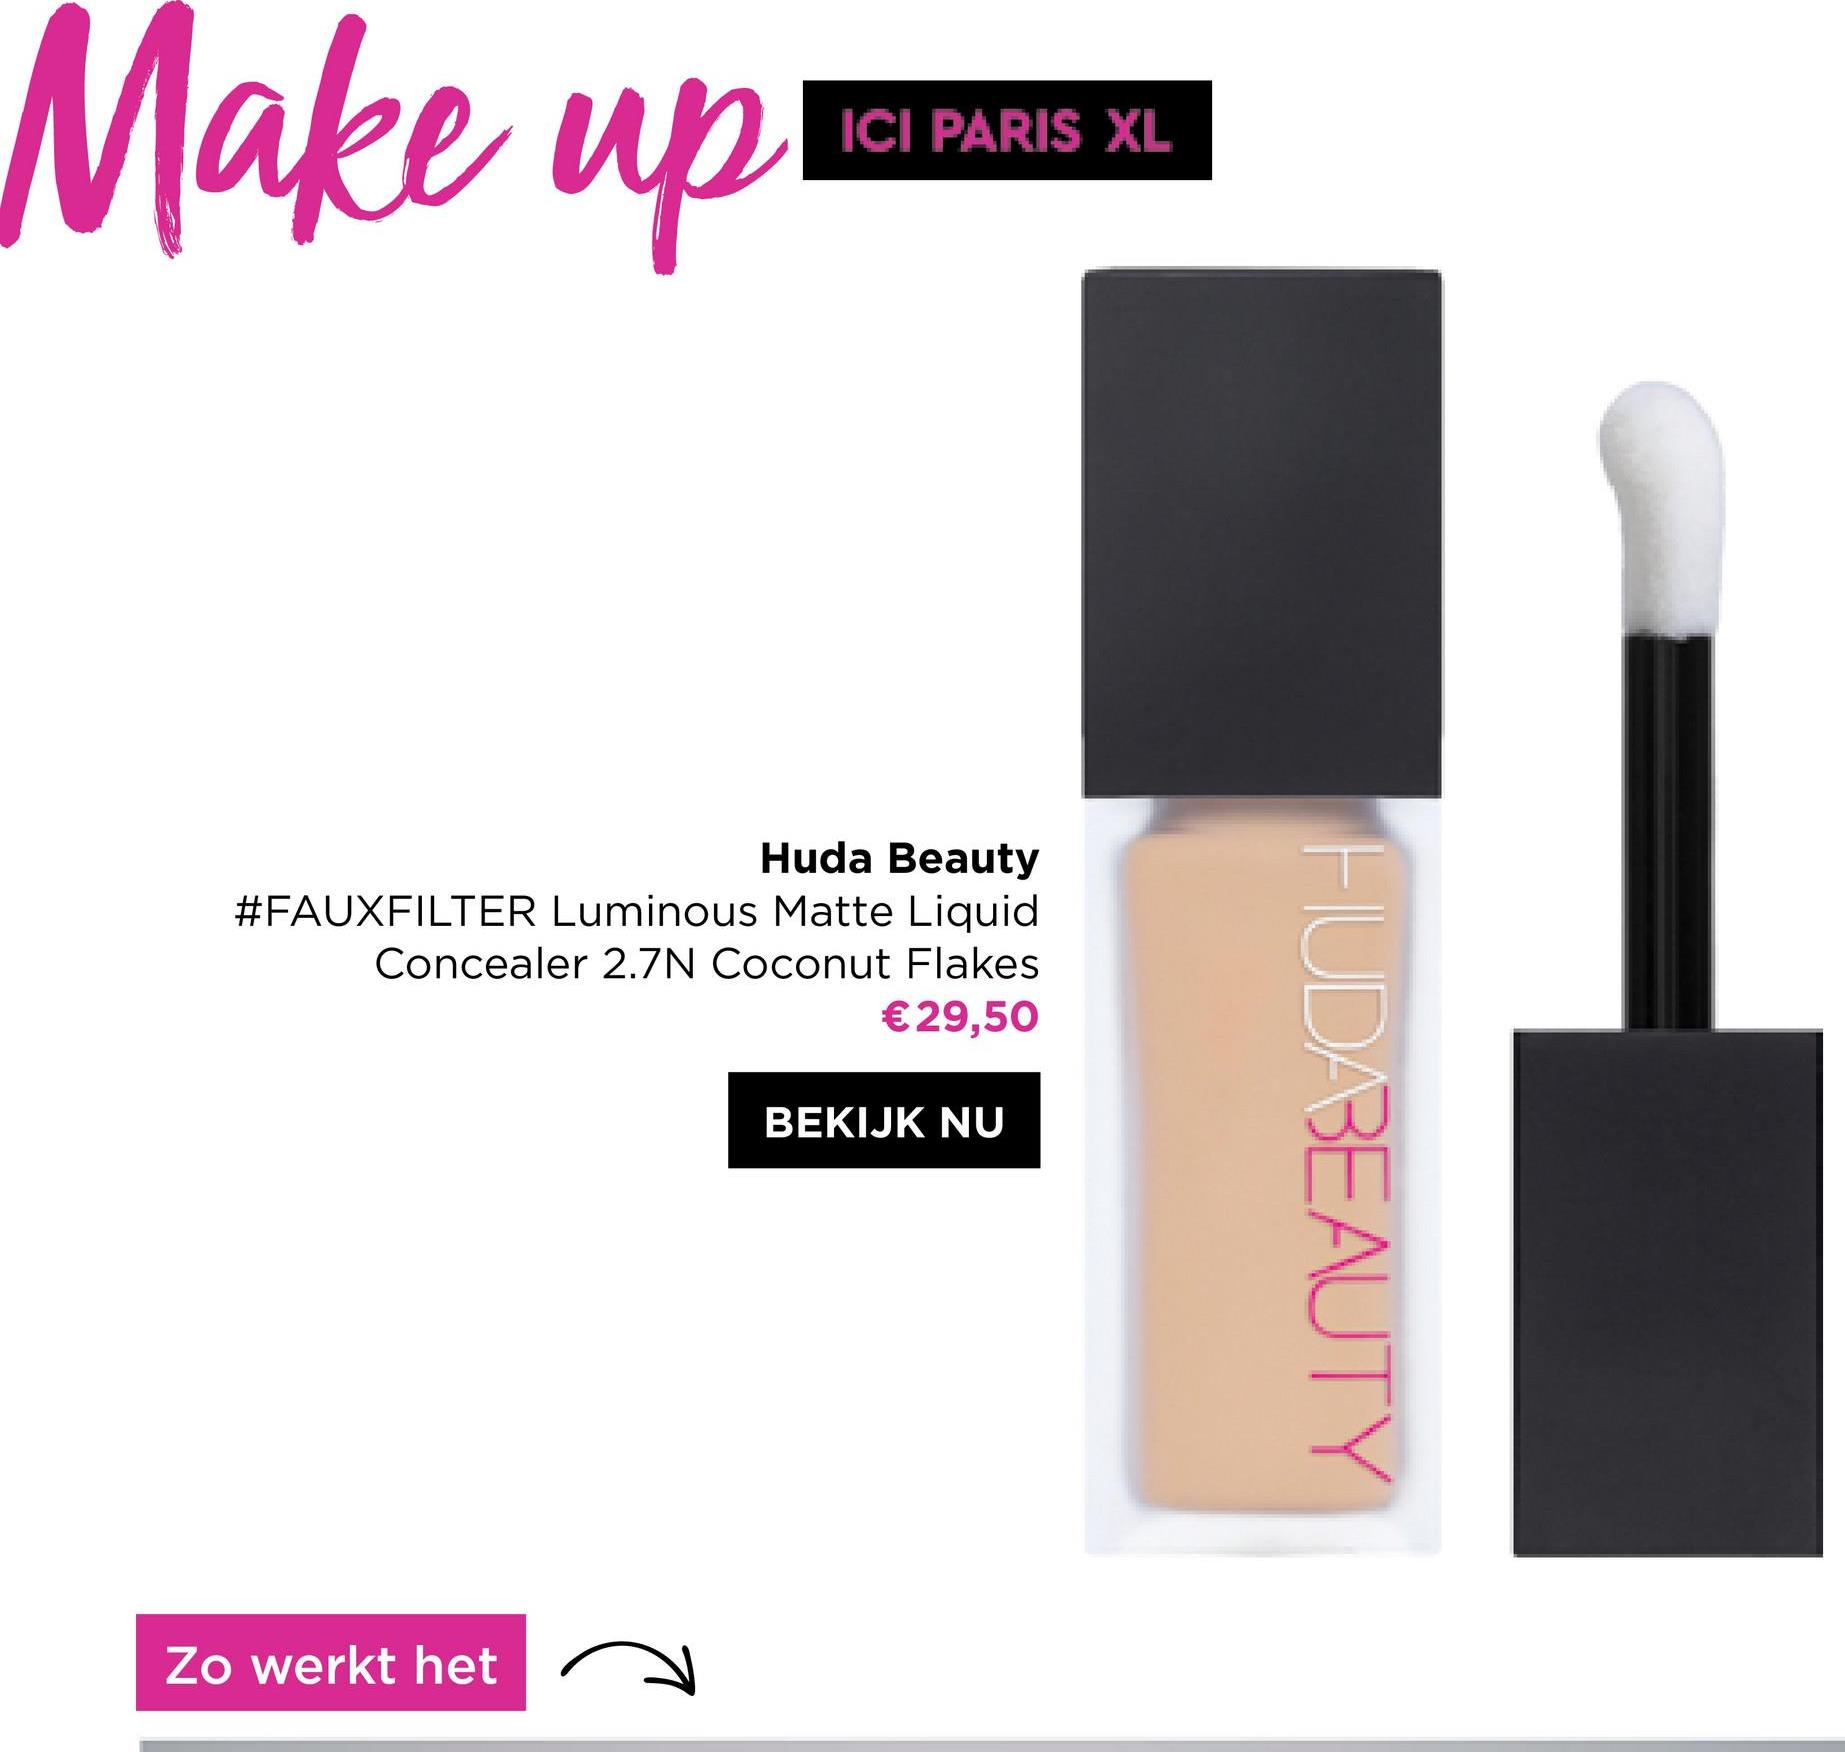 Make up!
ICI PARIS XL
Huda Beauty
#FAUXFILTER Luminous Matte Liquid
Concealer 2.7N Coconut Flakes
€29,50
BEKIJK NU
Zo werkt het
HUDABEAUTY